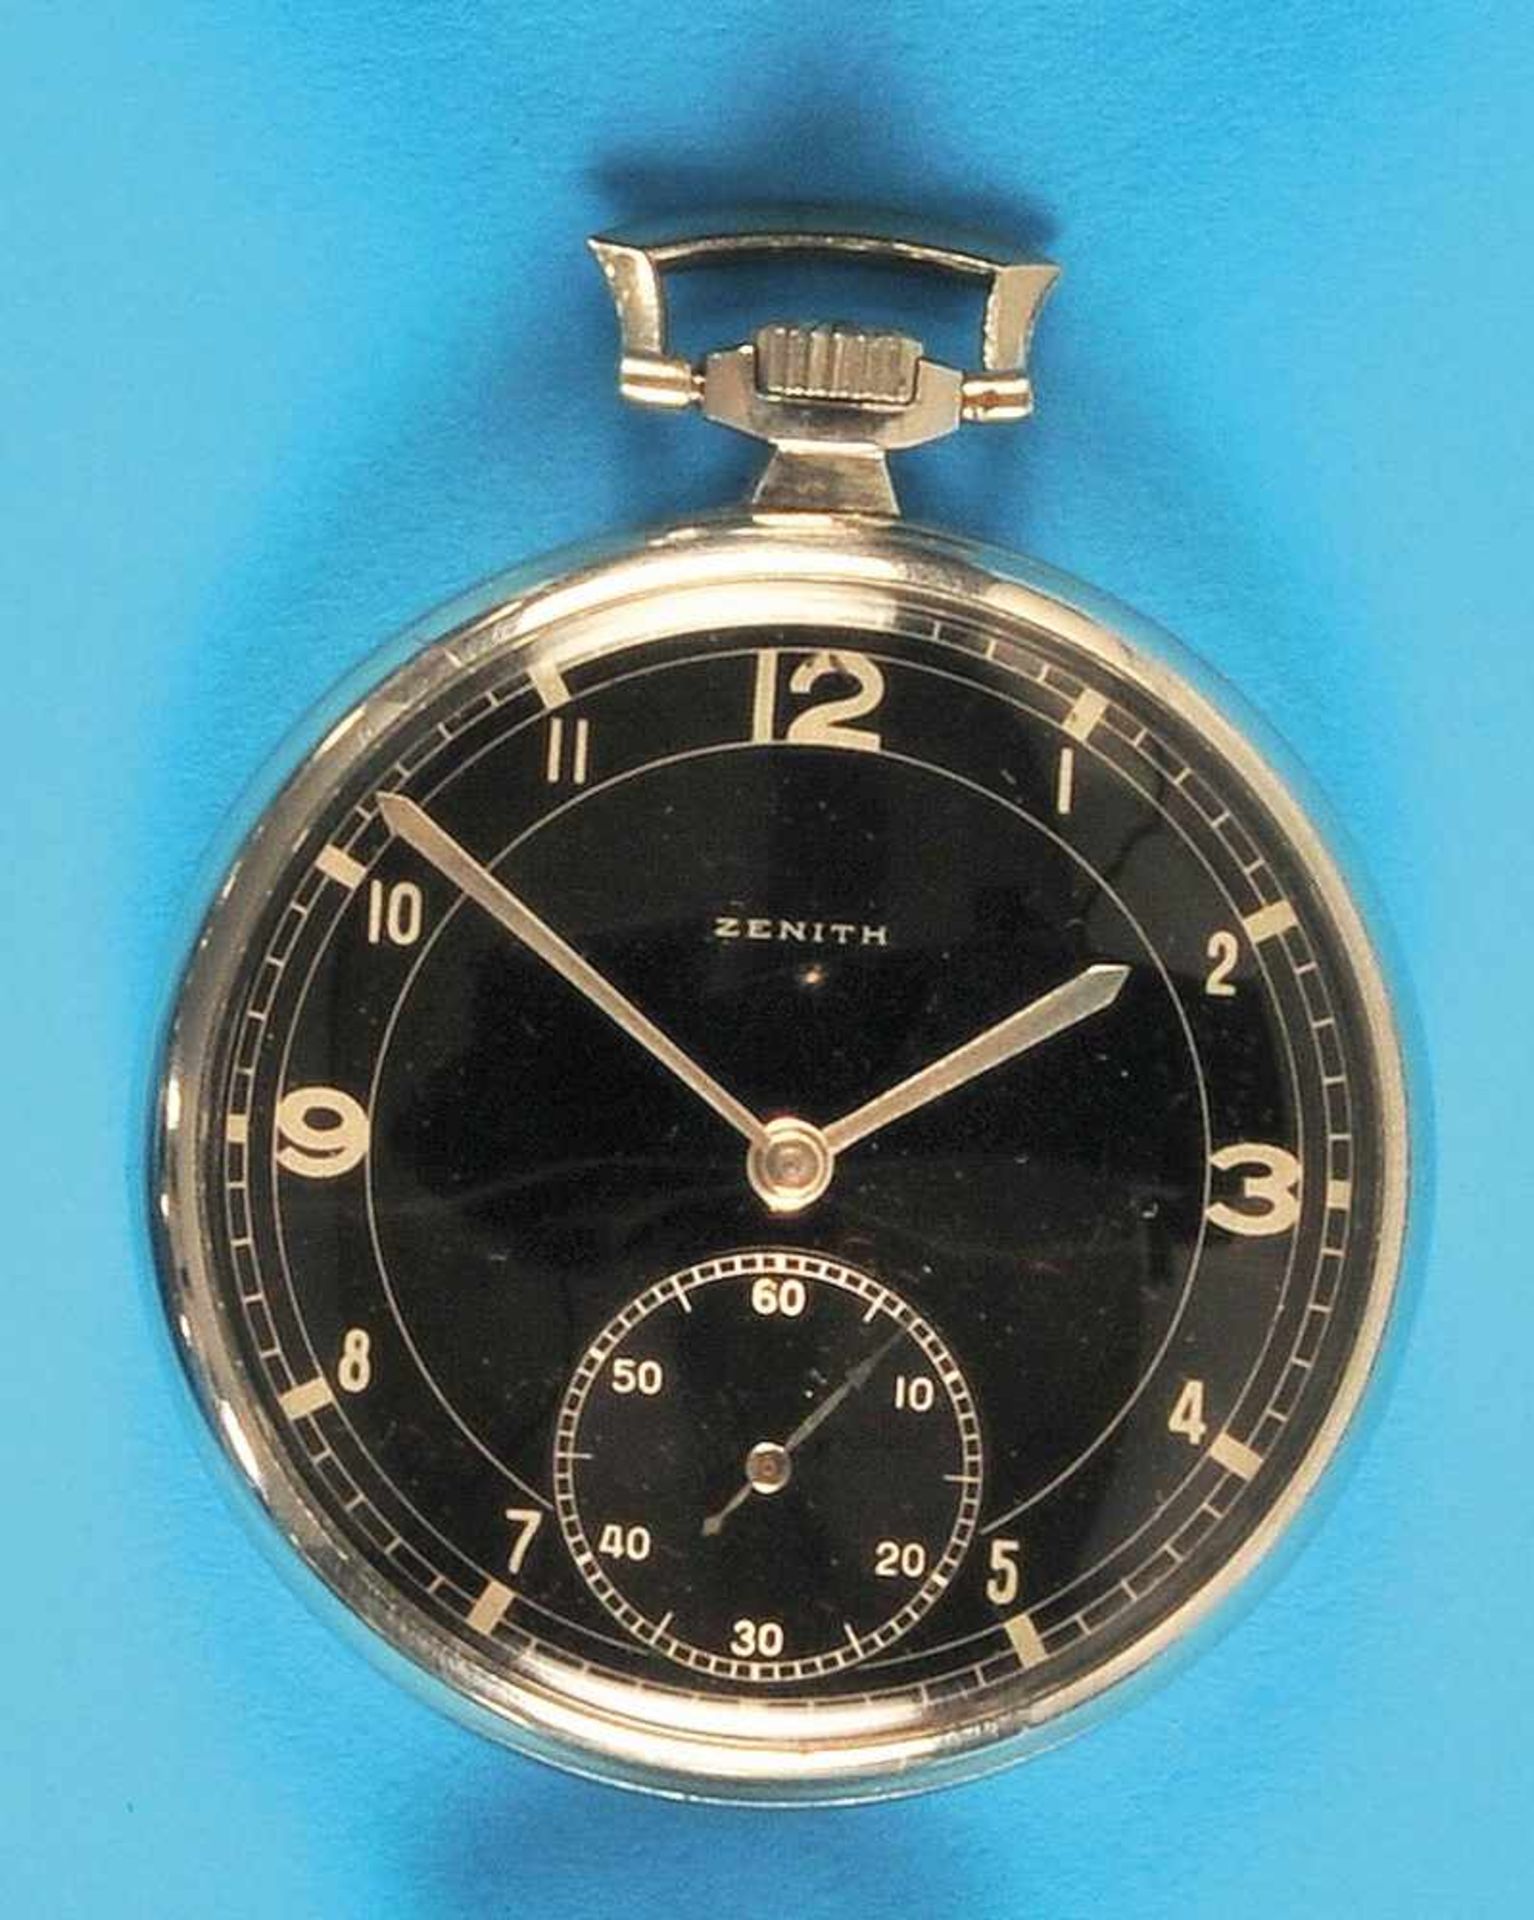 Metal pocket watch, ZenithMetalltaschenuhr, Zenith, glattes Gehäuse, schwarzes Zifferblatt mit